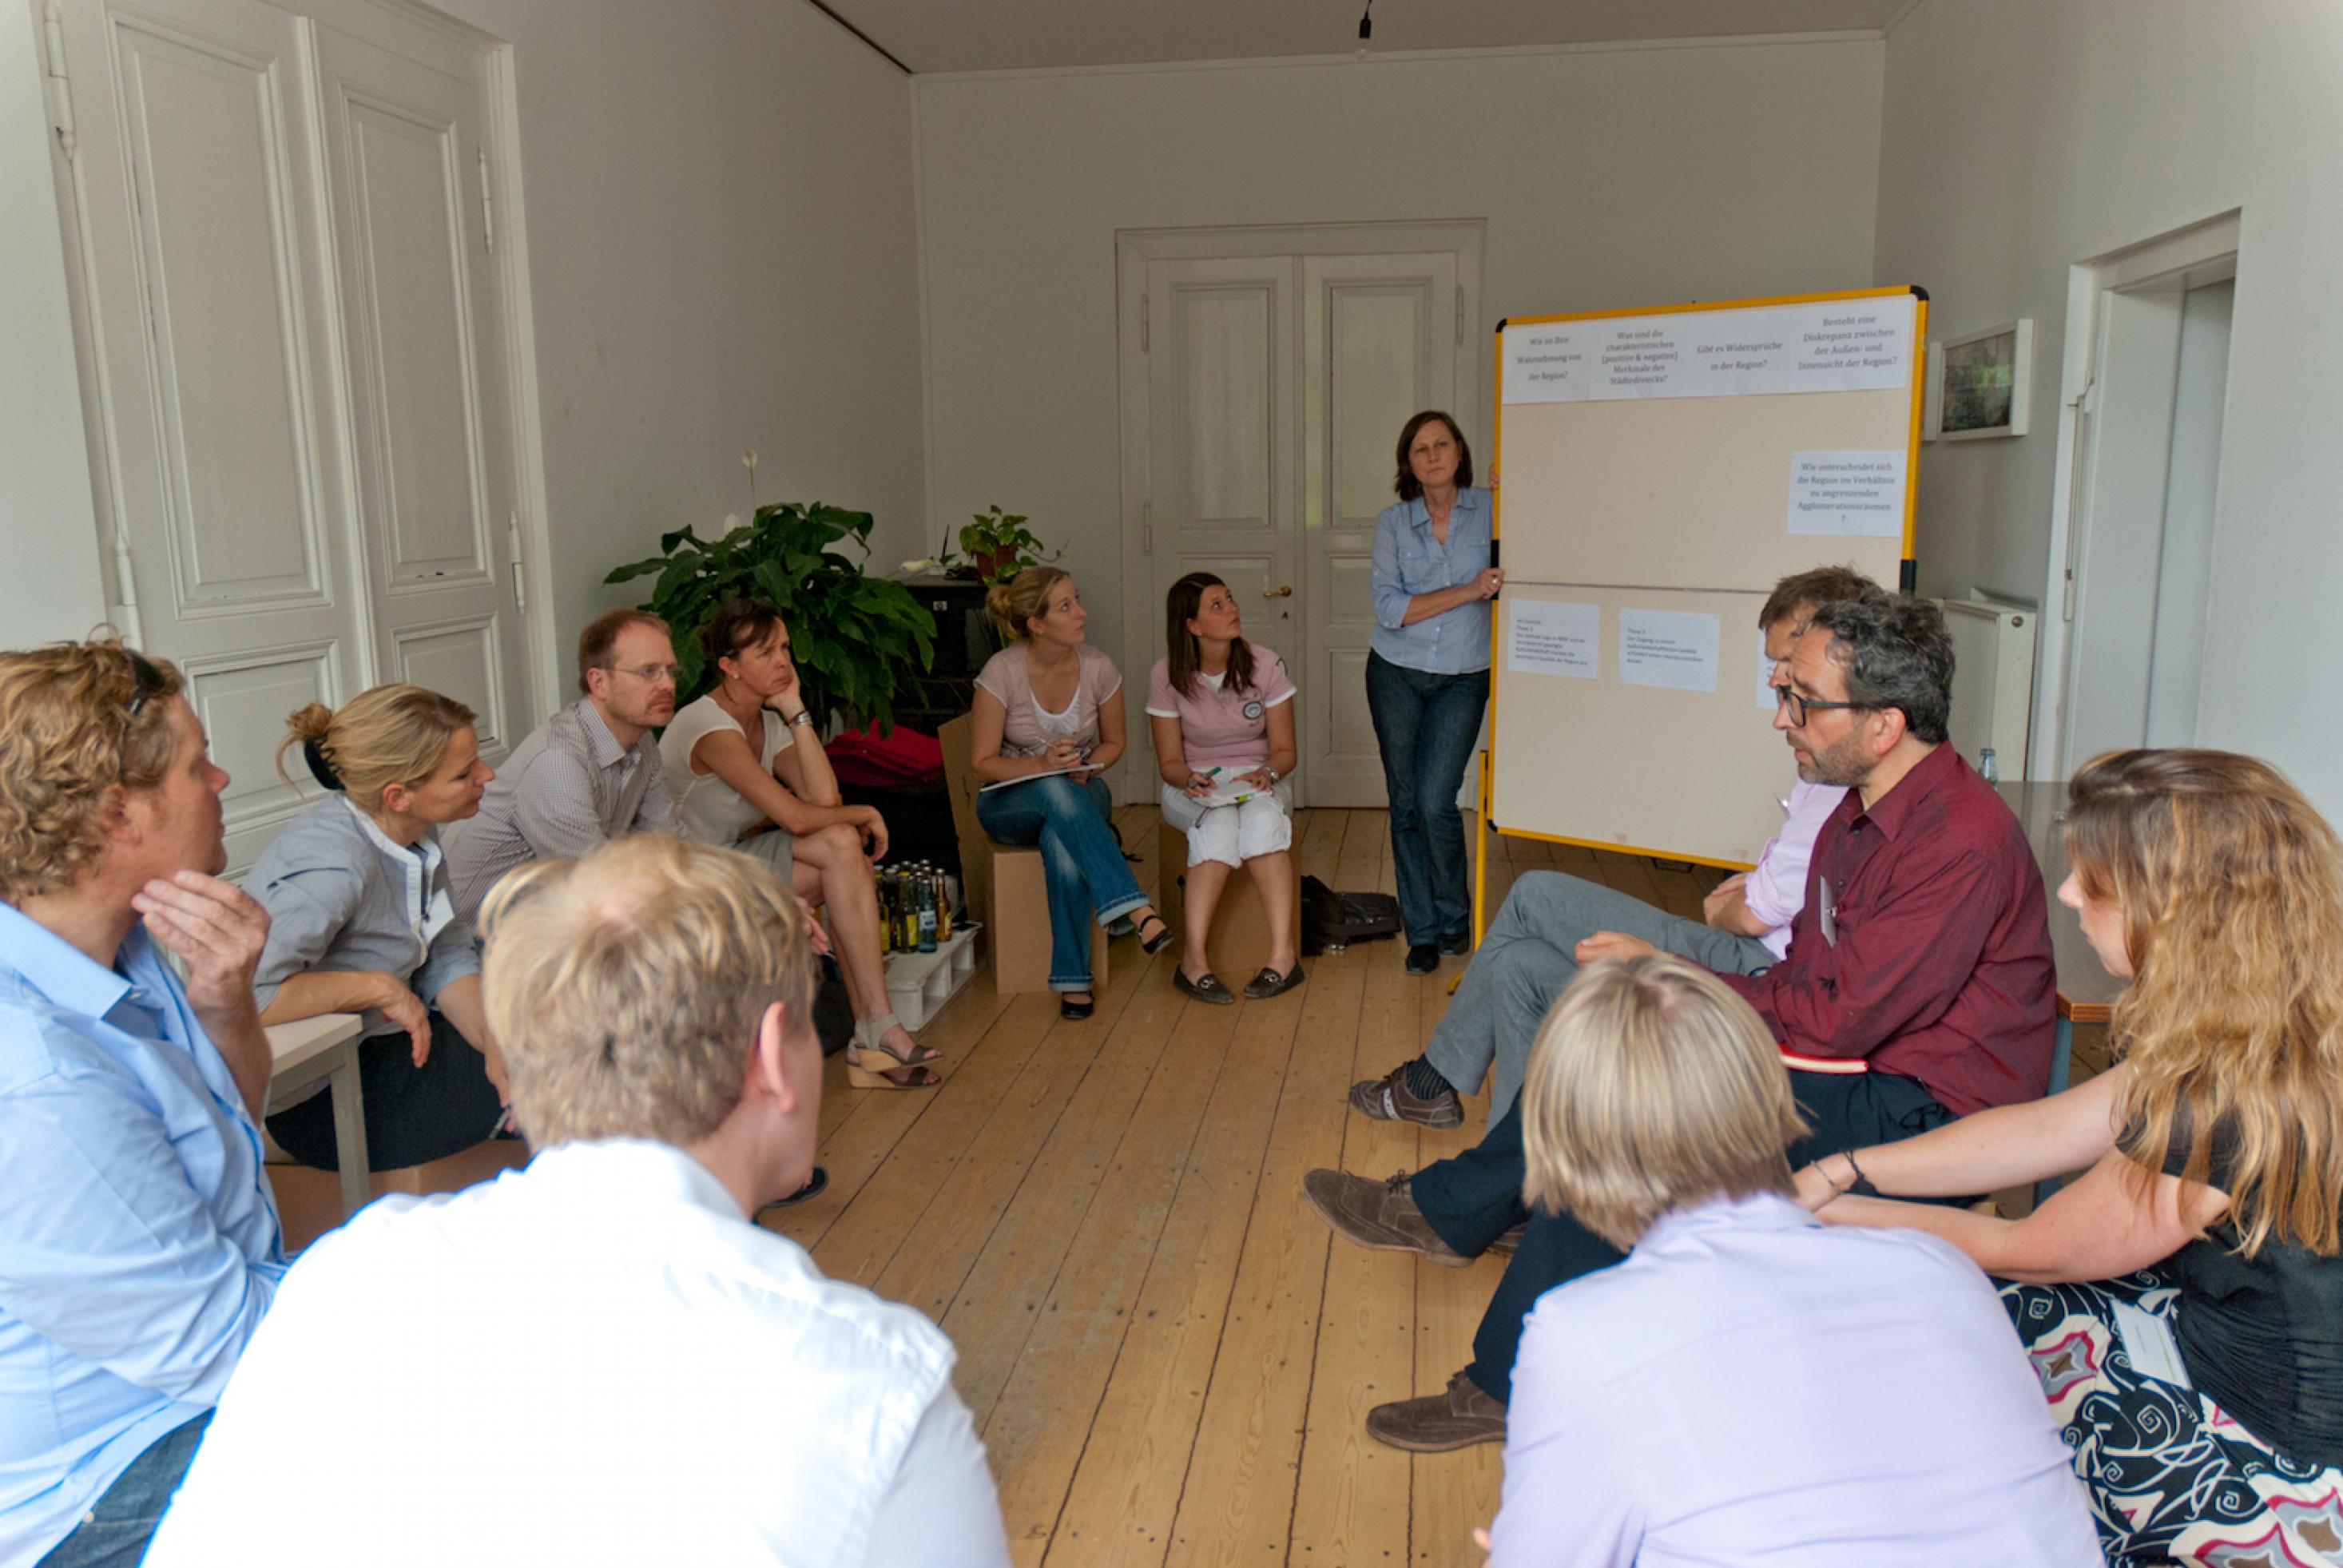 Teilnehmer des Workshops in einem kleinen Raum mit weißen Wänden und hellem Bretterboden.